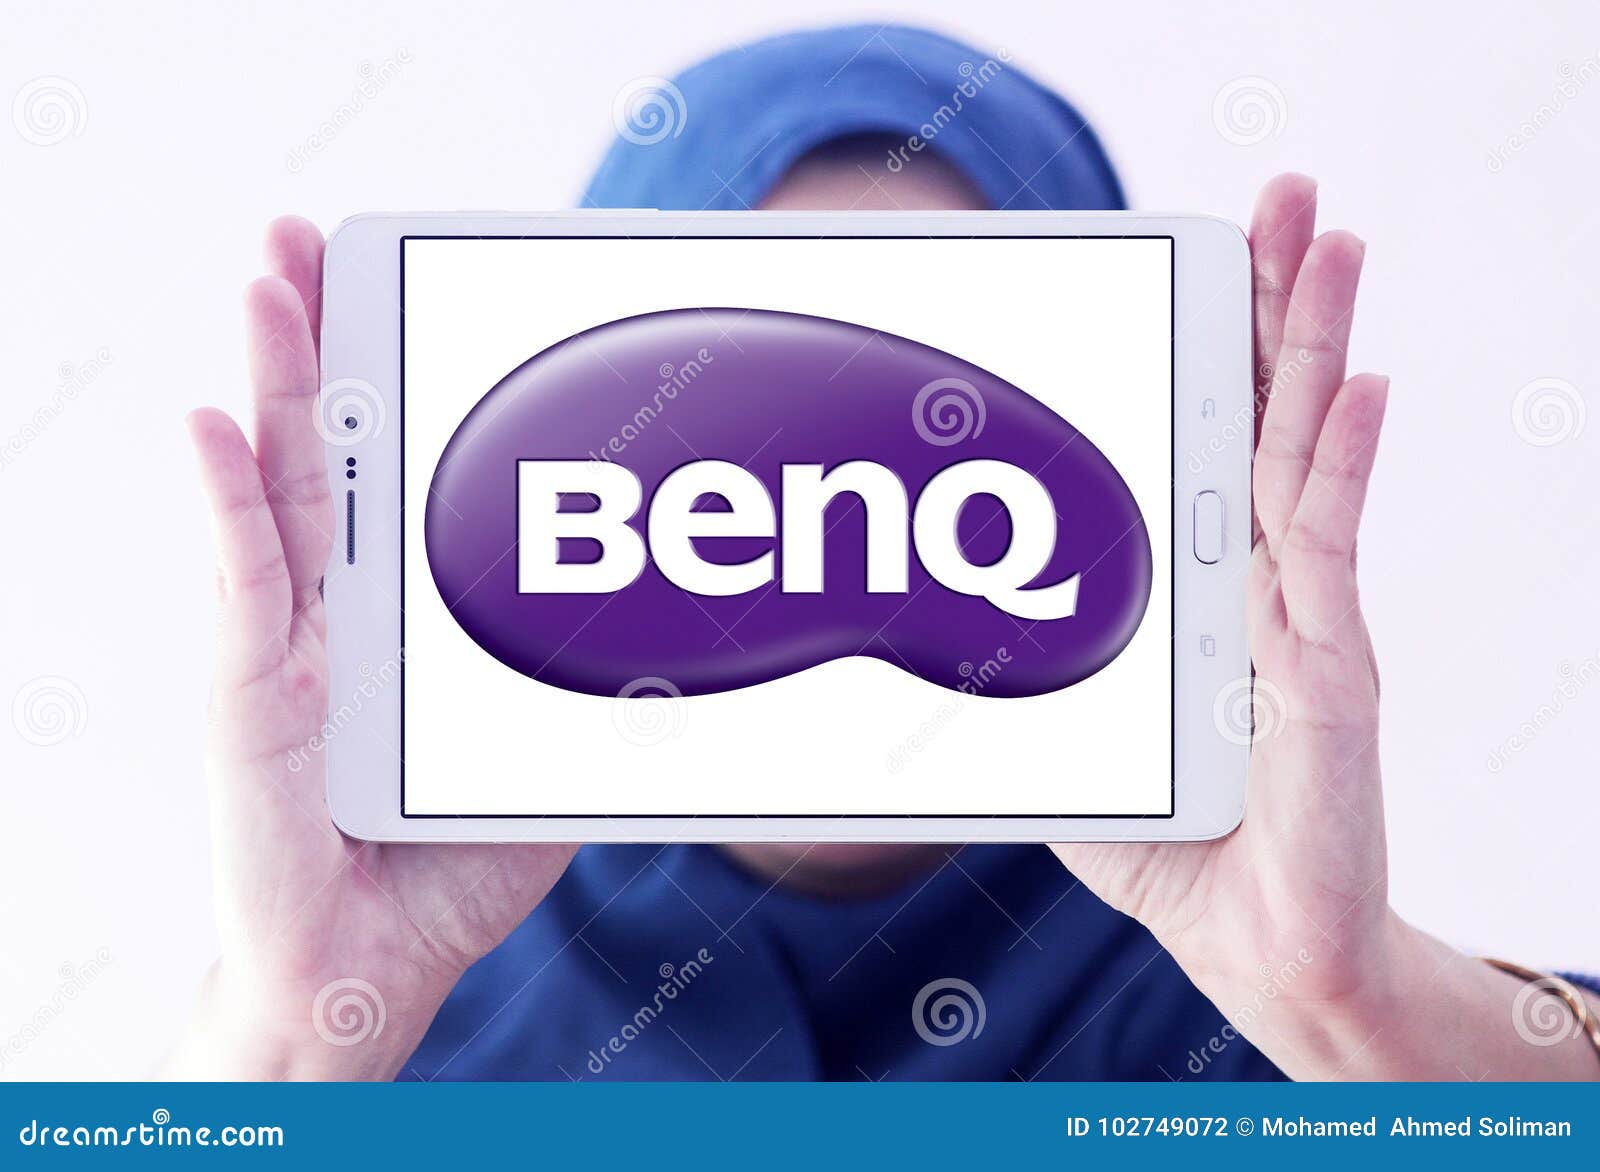 User-Review BenQ Joybook 5200G - NotebookCheck.net Reviews